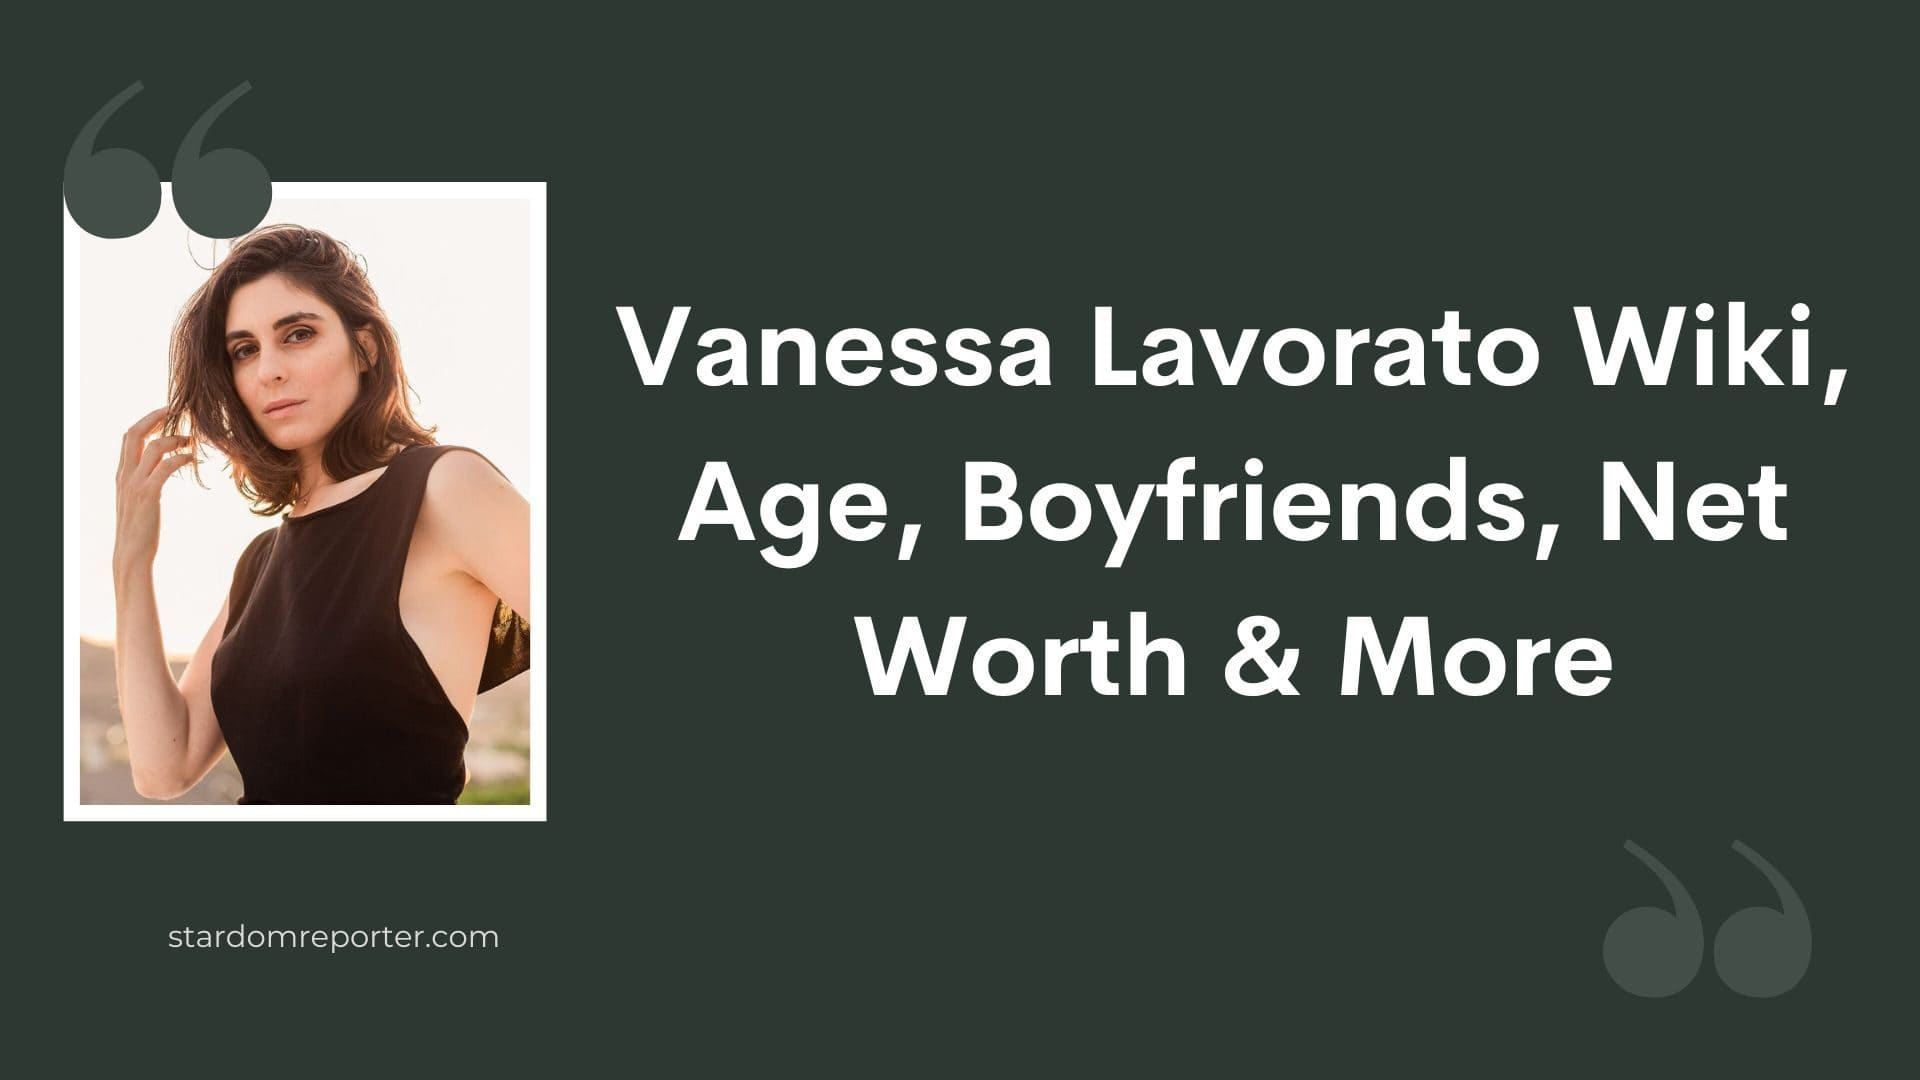 Vanessa Lavorato Wiki, Age, Bio, Boyfriends, Net Worth & More - 1